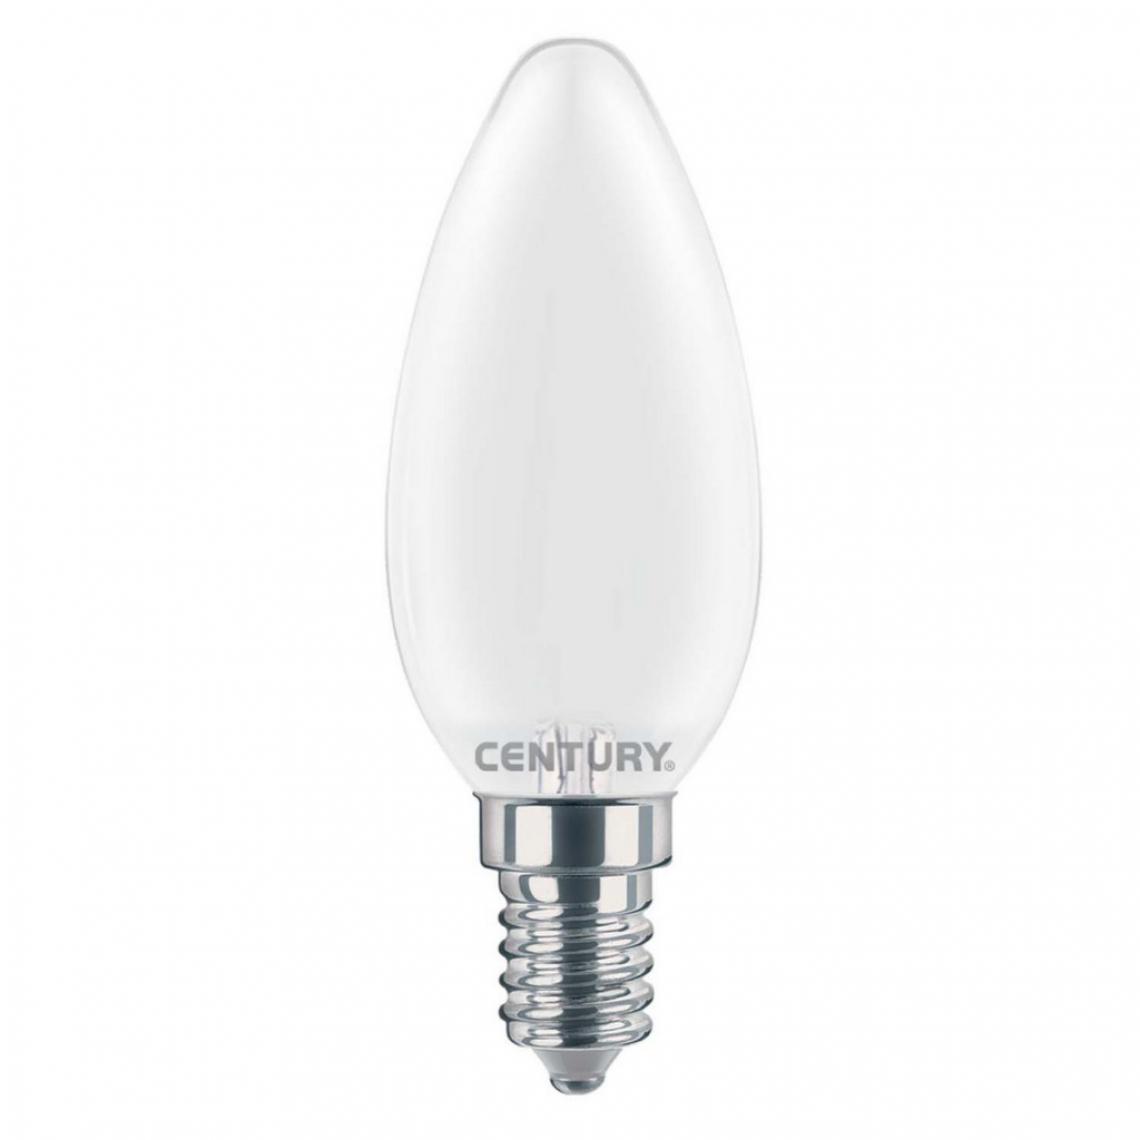 Alpexe - Ampoule LED E14 4 W 470 lm 6000 K - Ampoules LED